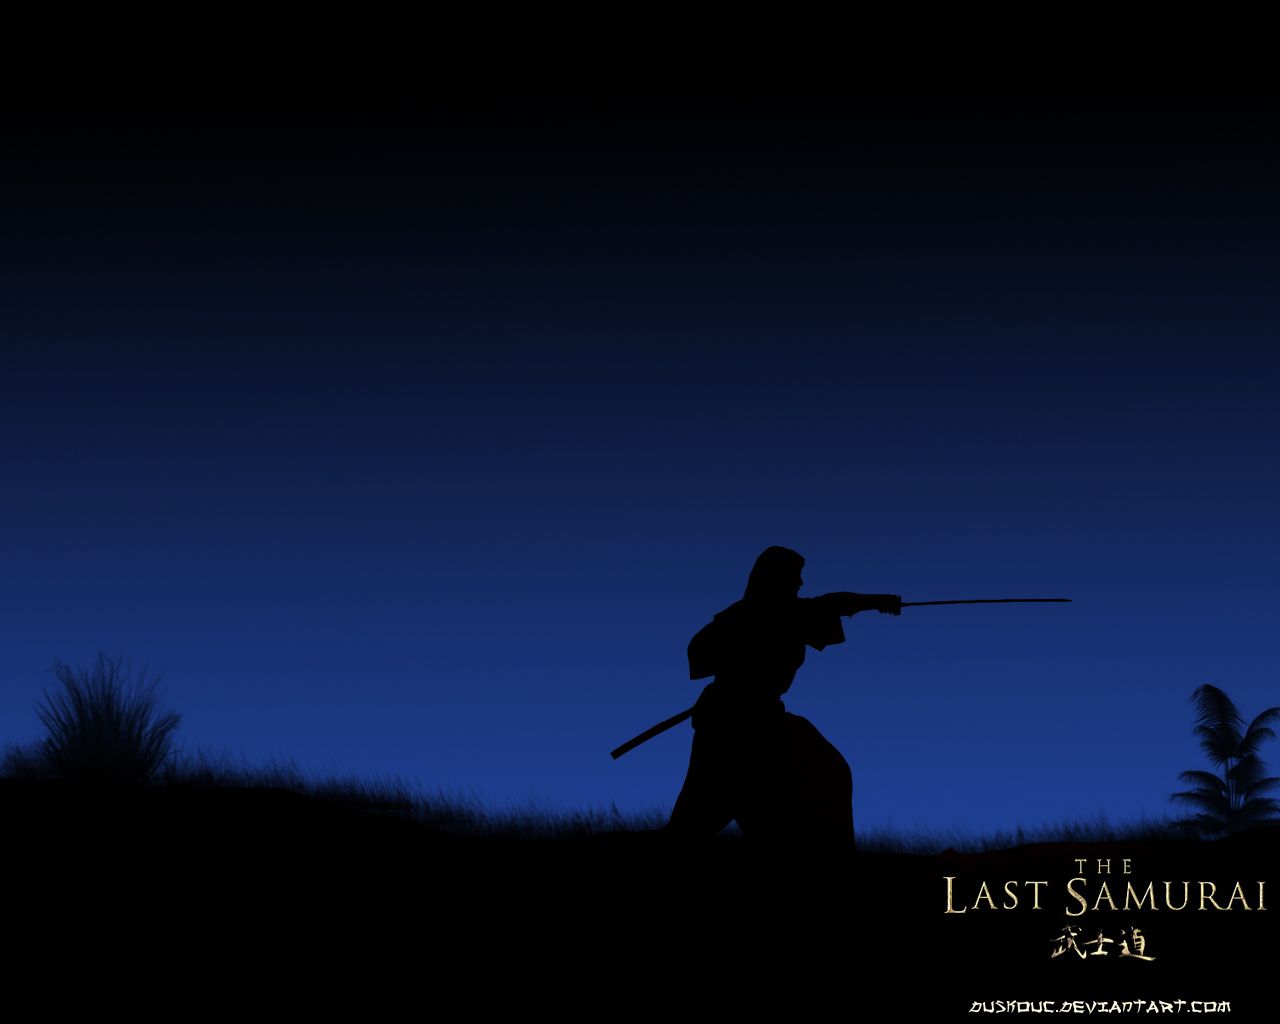 The Last Samurai night by Duskouc on DeviantArt